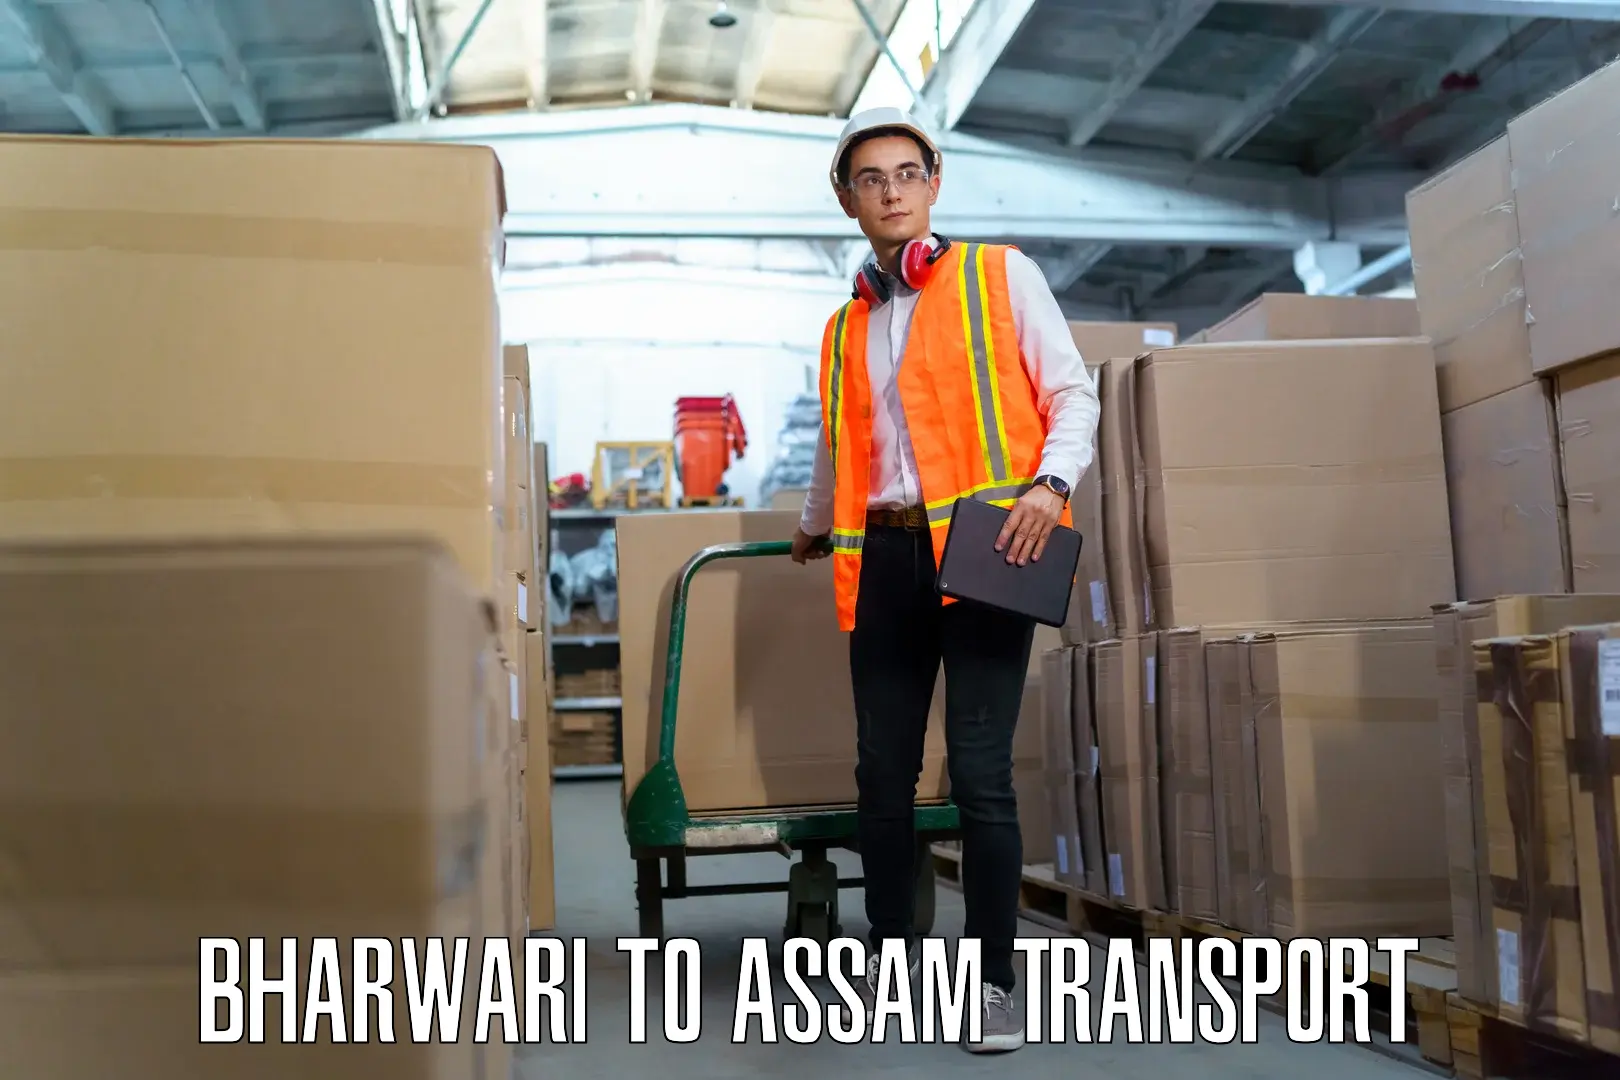 Furniture transport service Bharwari to Hailakandi